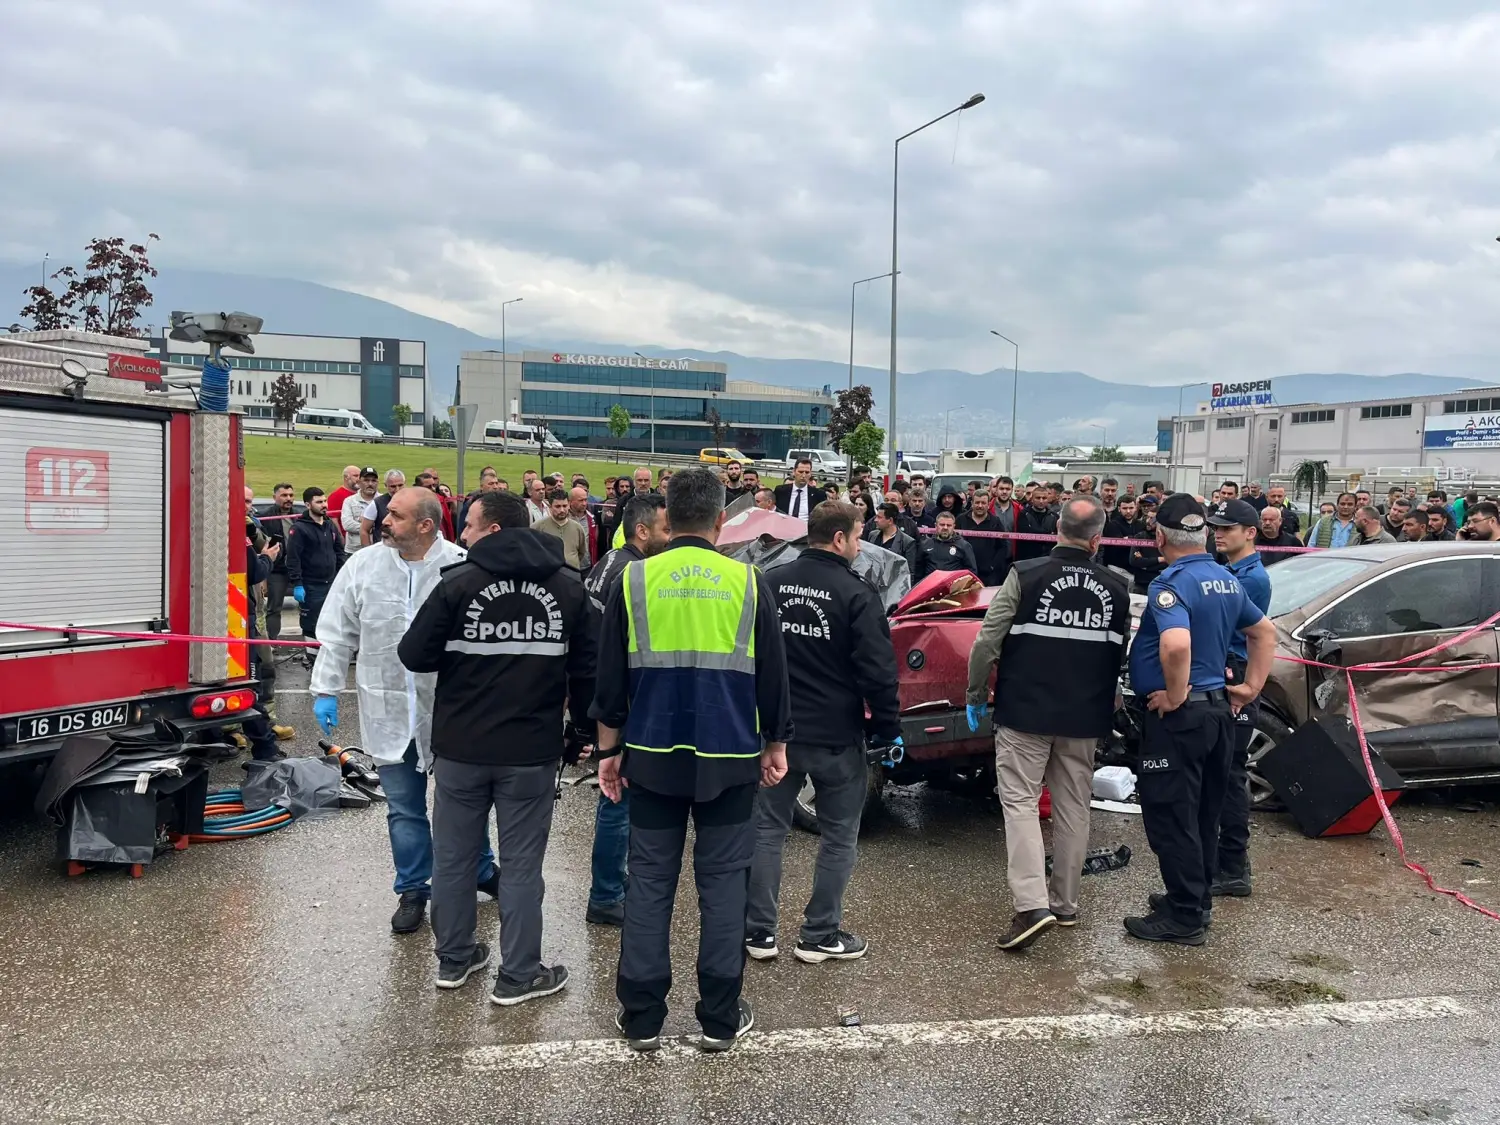 Bursa'da Yağmurda Kontrolden Çıkan Tofaş, Ters Şeride Girdi 2 Ölü 1 Yaralı1 Gencgazete